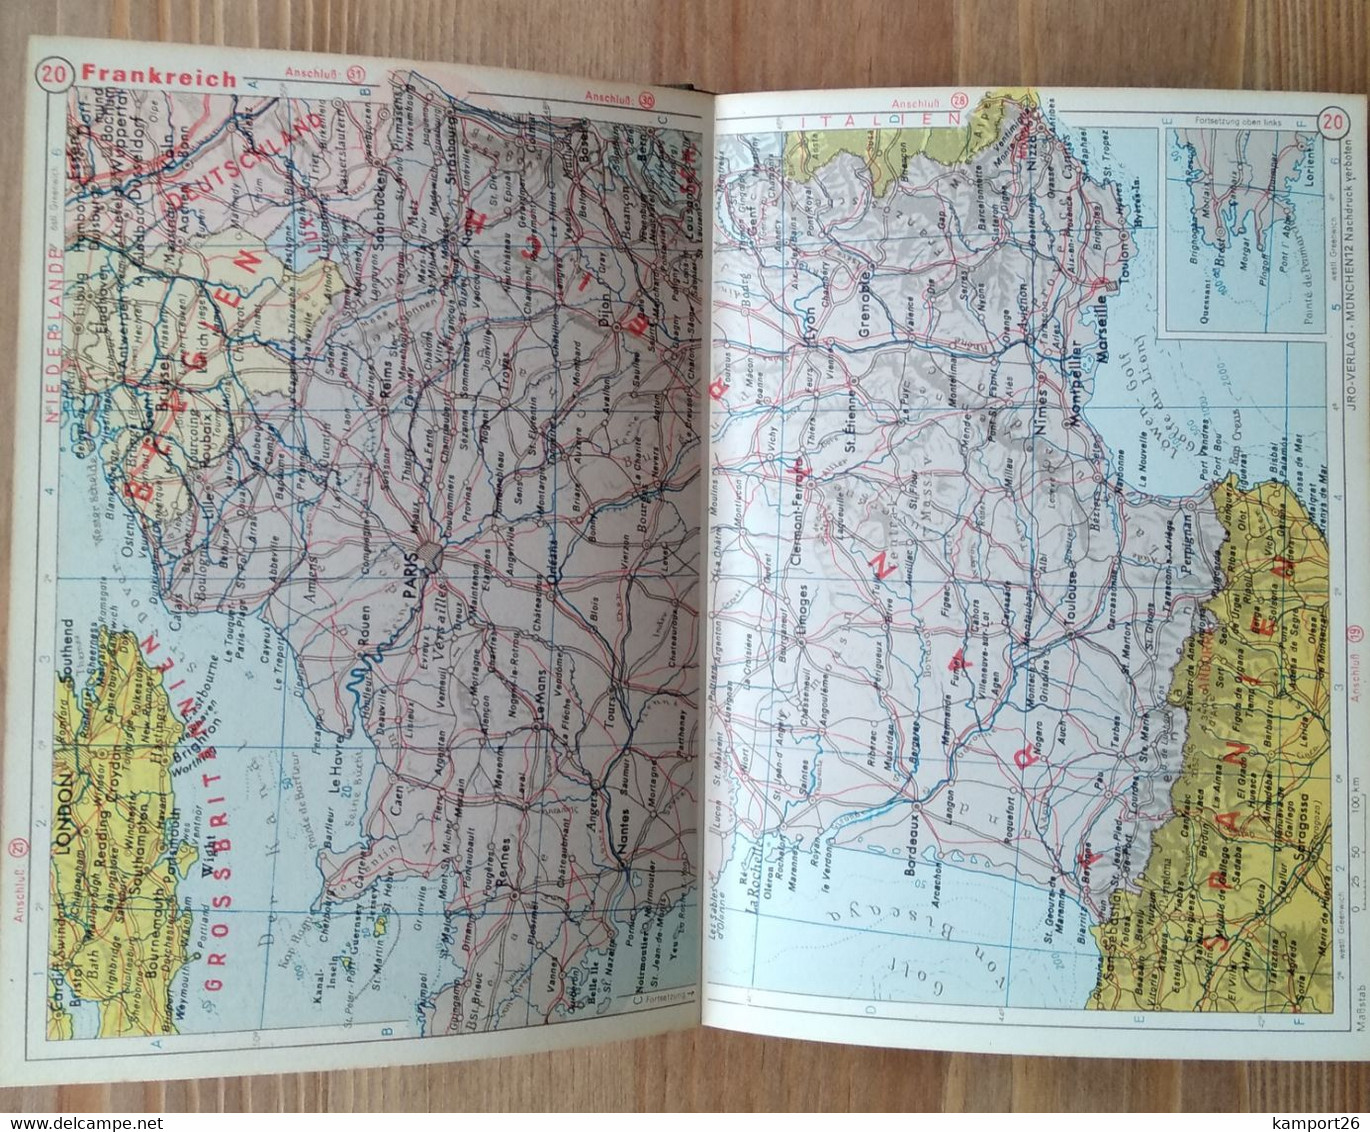 1959 TASCHENATLAS Ernst Kremling CARL PRIOR Illustrated ATLAS Geographic 29rd Edition Maps - Wereldkaarten